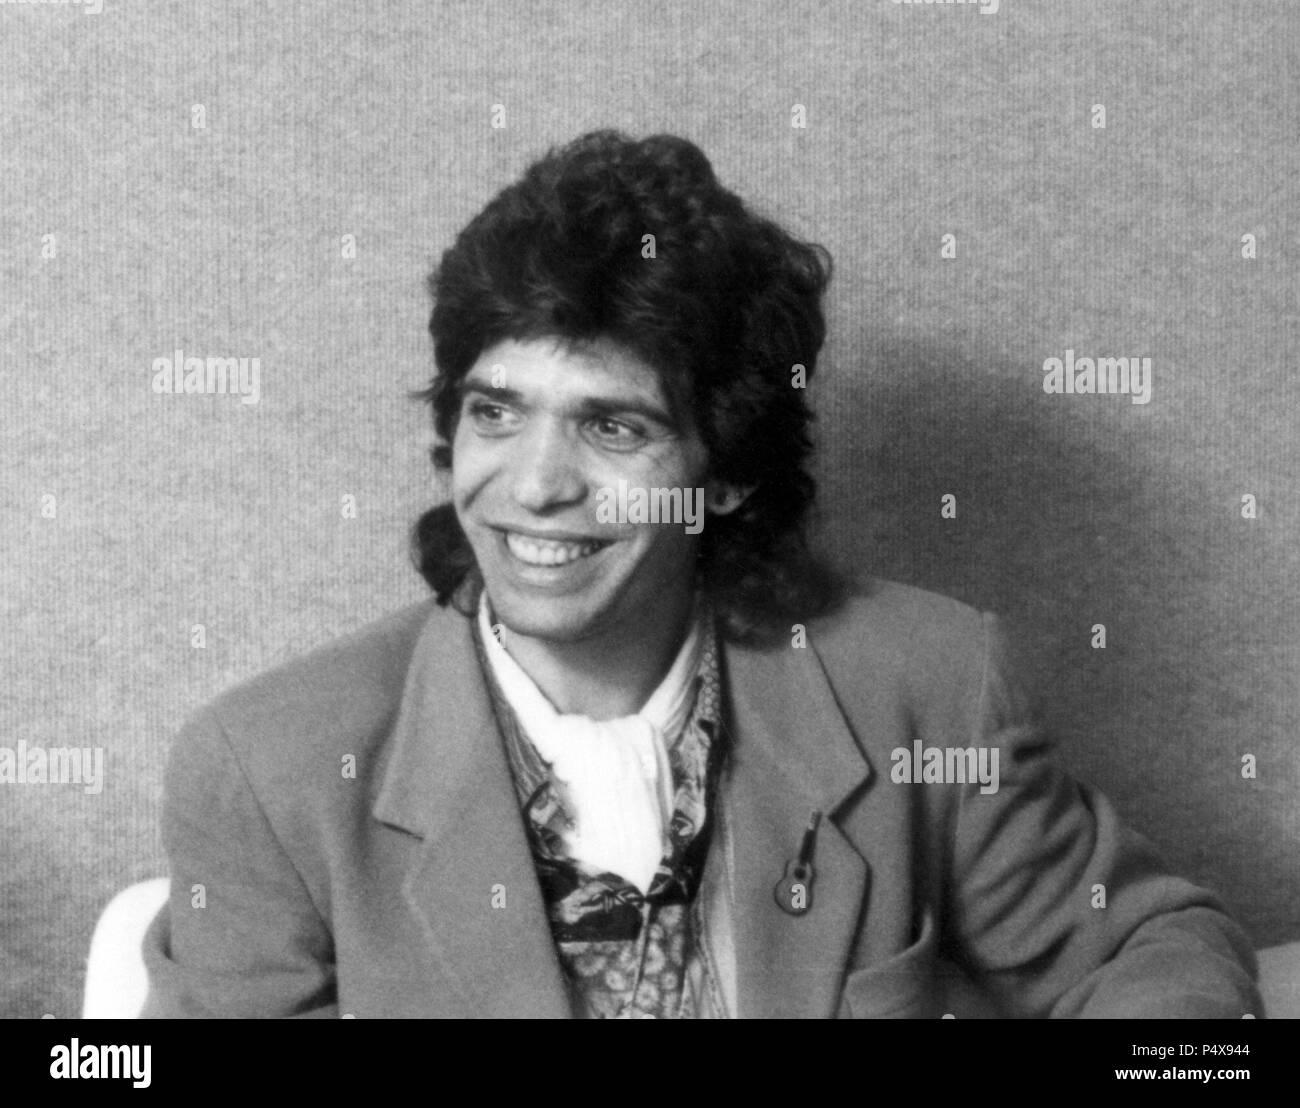 Camarón de la Isla durante la grabación del disco 'Soy gitano' del año 1989  Stock Photo - Alamy